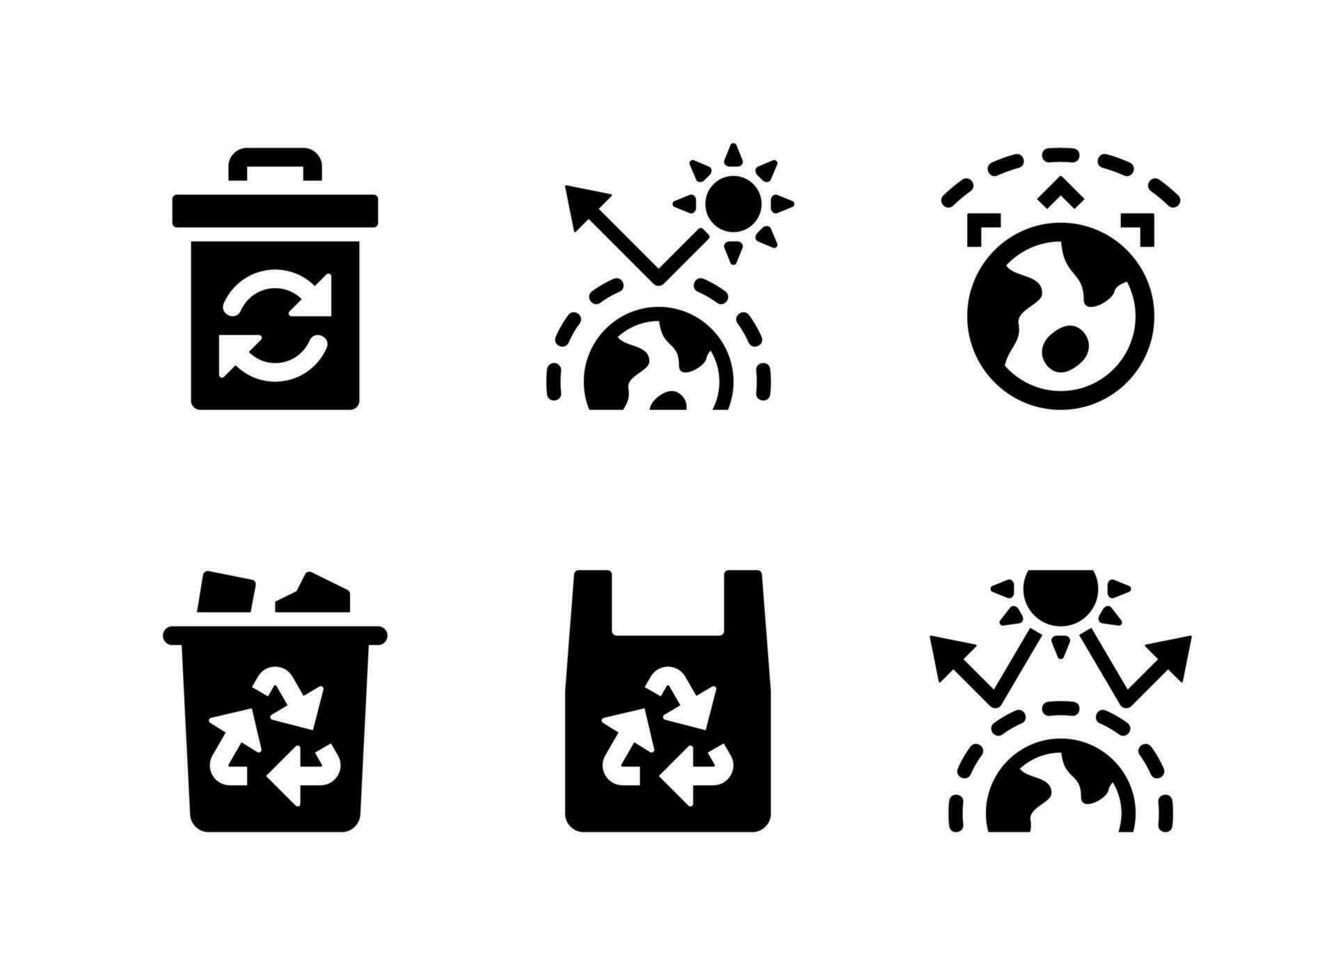 conjunto simple de iconos sólidos vectoriales relacionados con el cambio climático. contiene íconos como papelera de reciclaje, efecto invernadero y más. vector